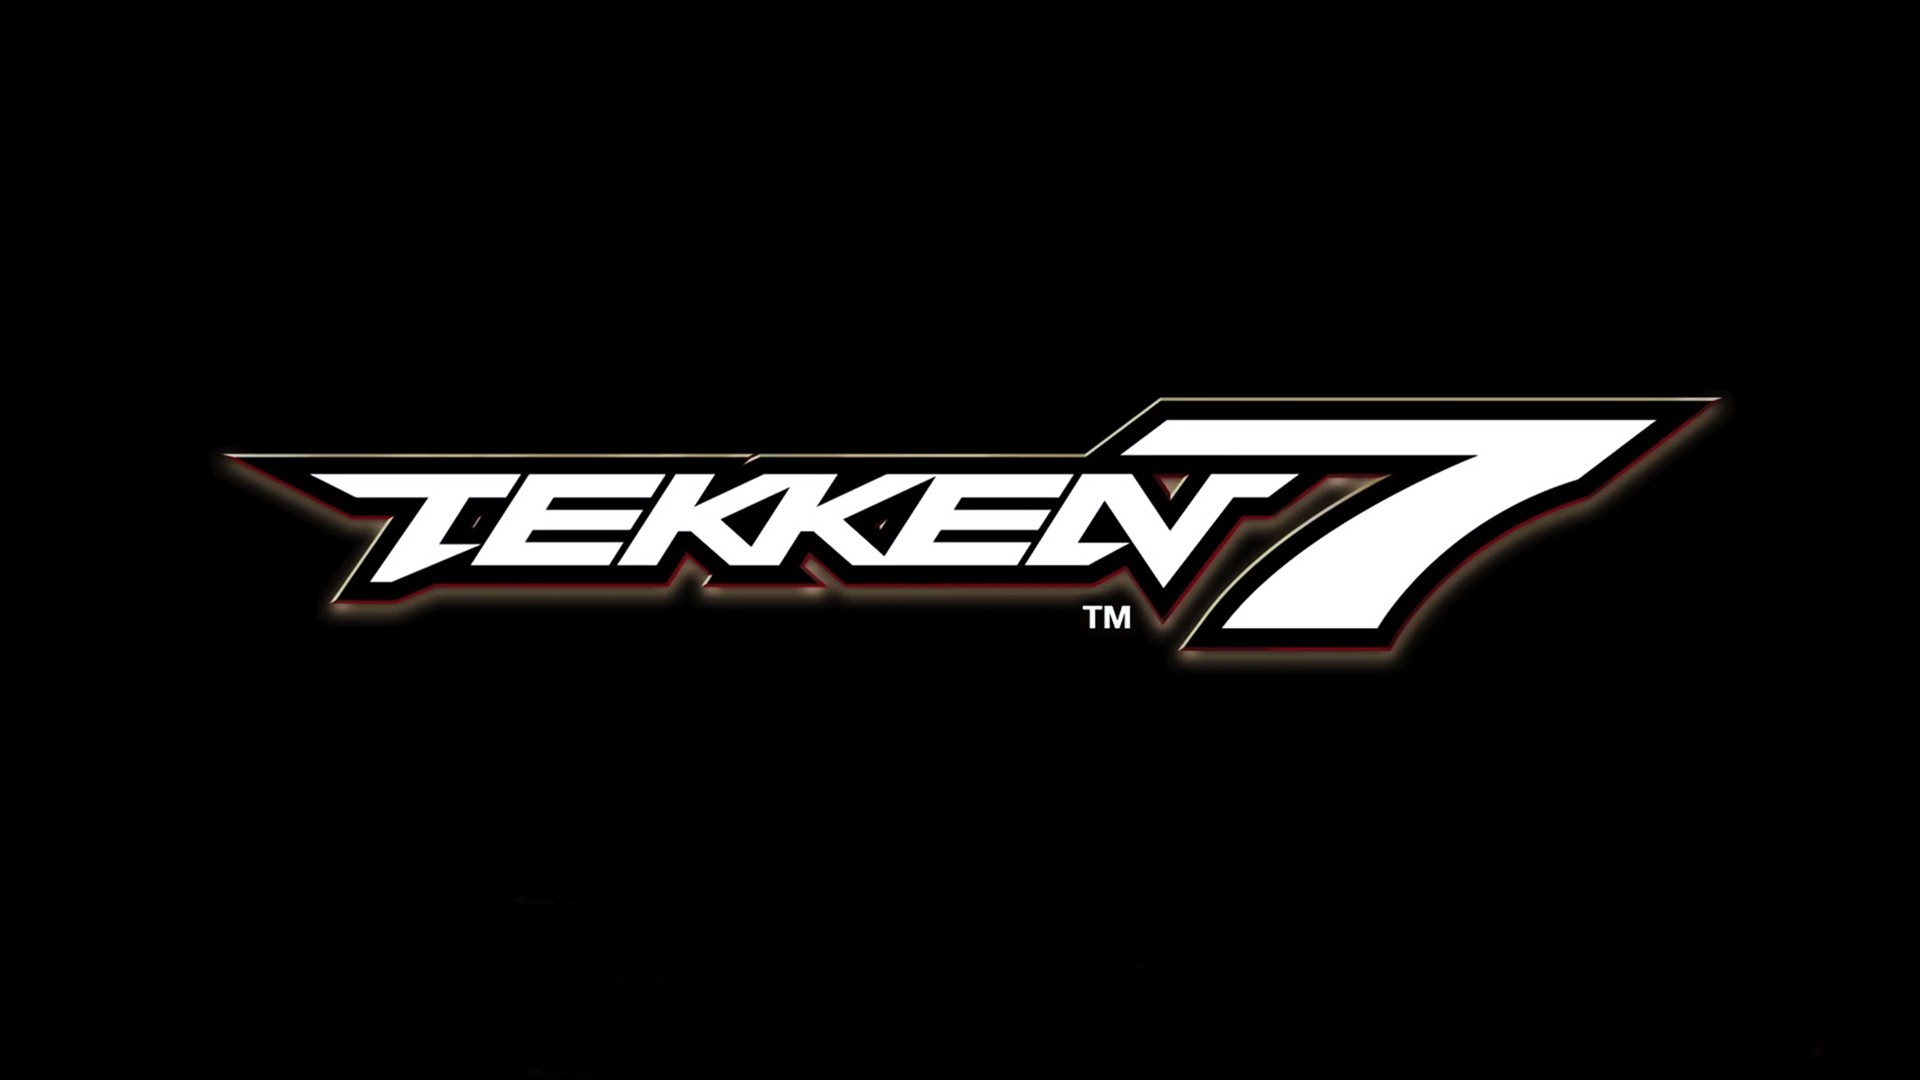 Tekken 7 logo Wallpaper 